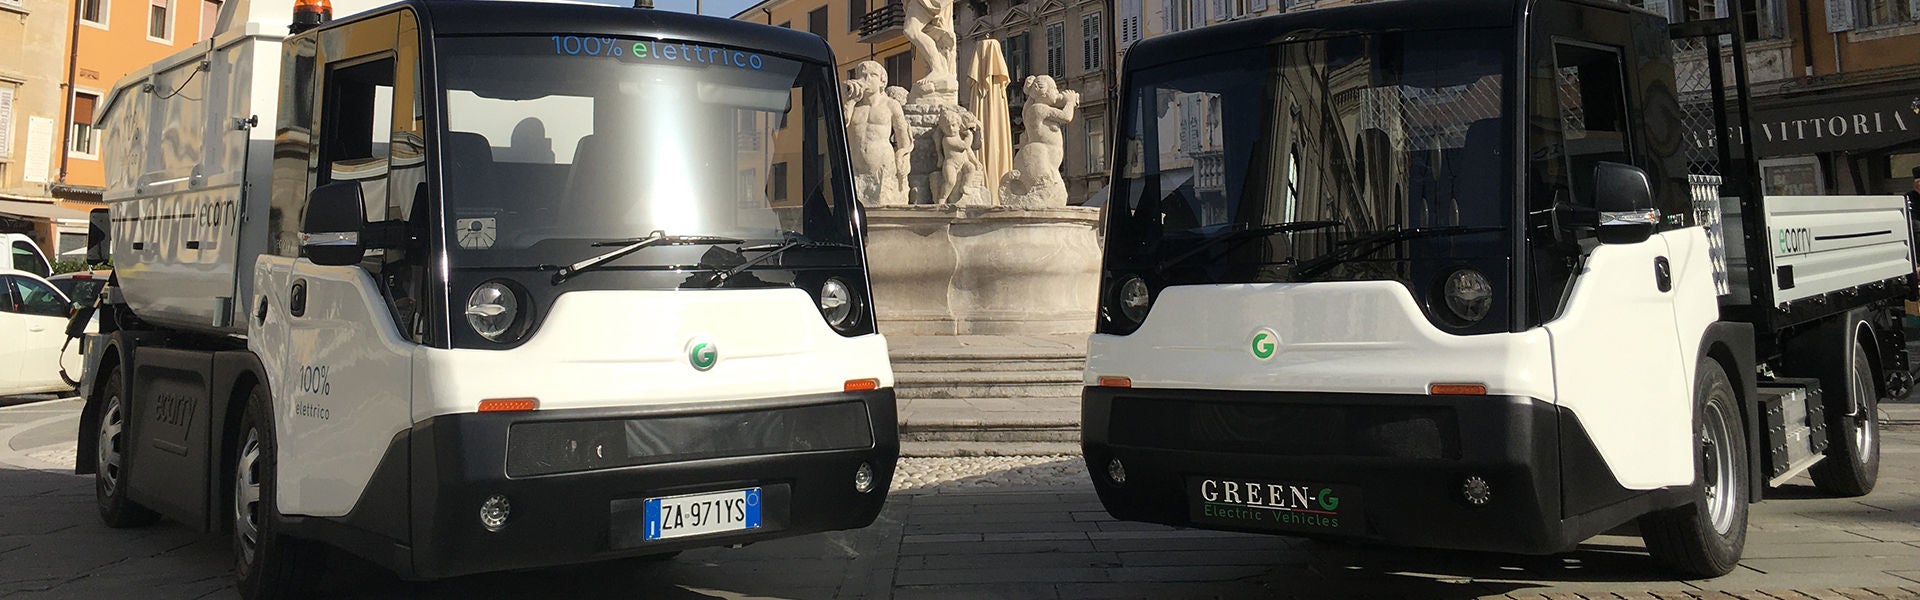 Bequeme 11 Sitzreine elektrische Weinlese-Auto-touristische Fahrzeuge mit  Wechselstrom-System